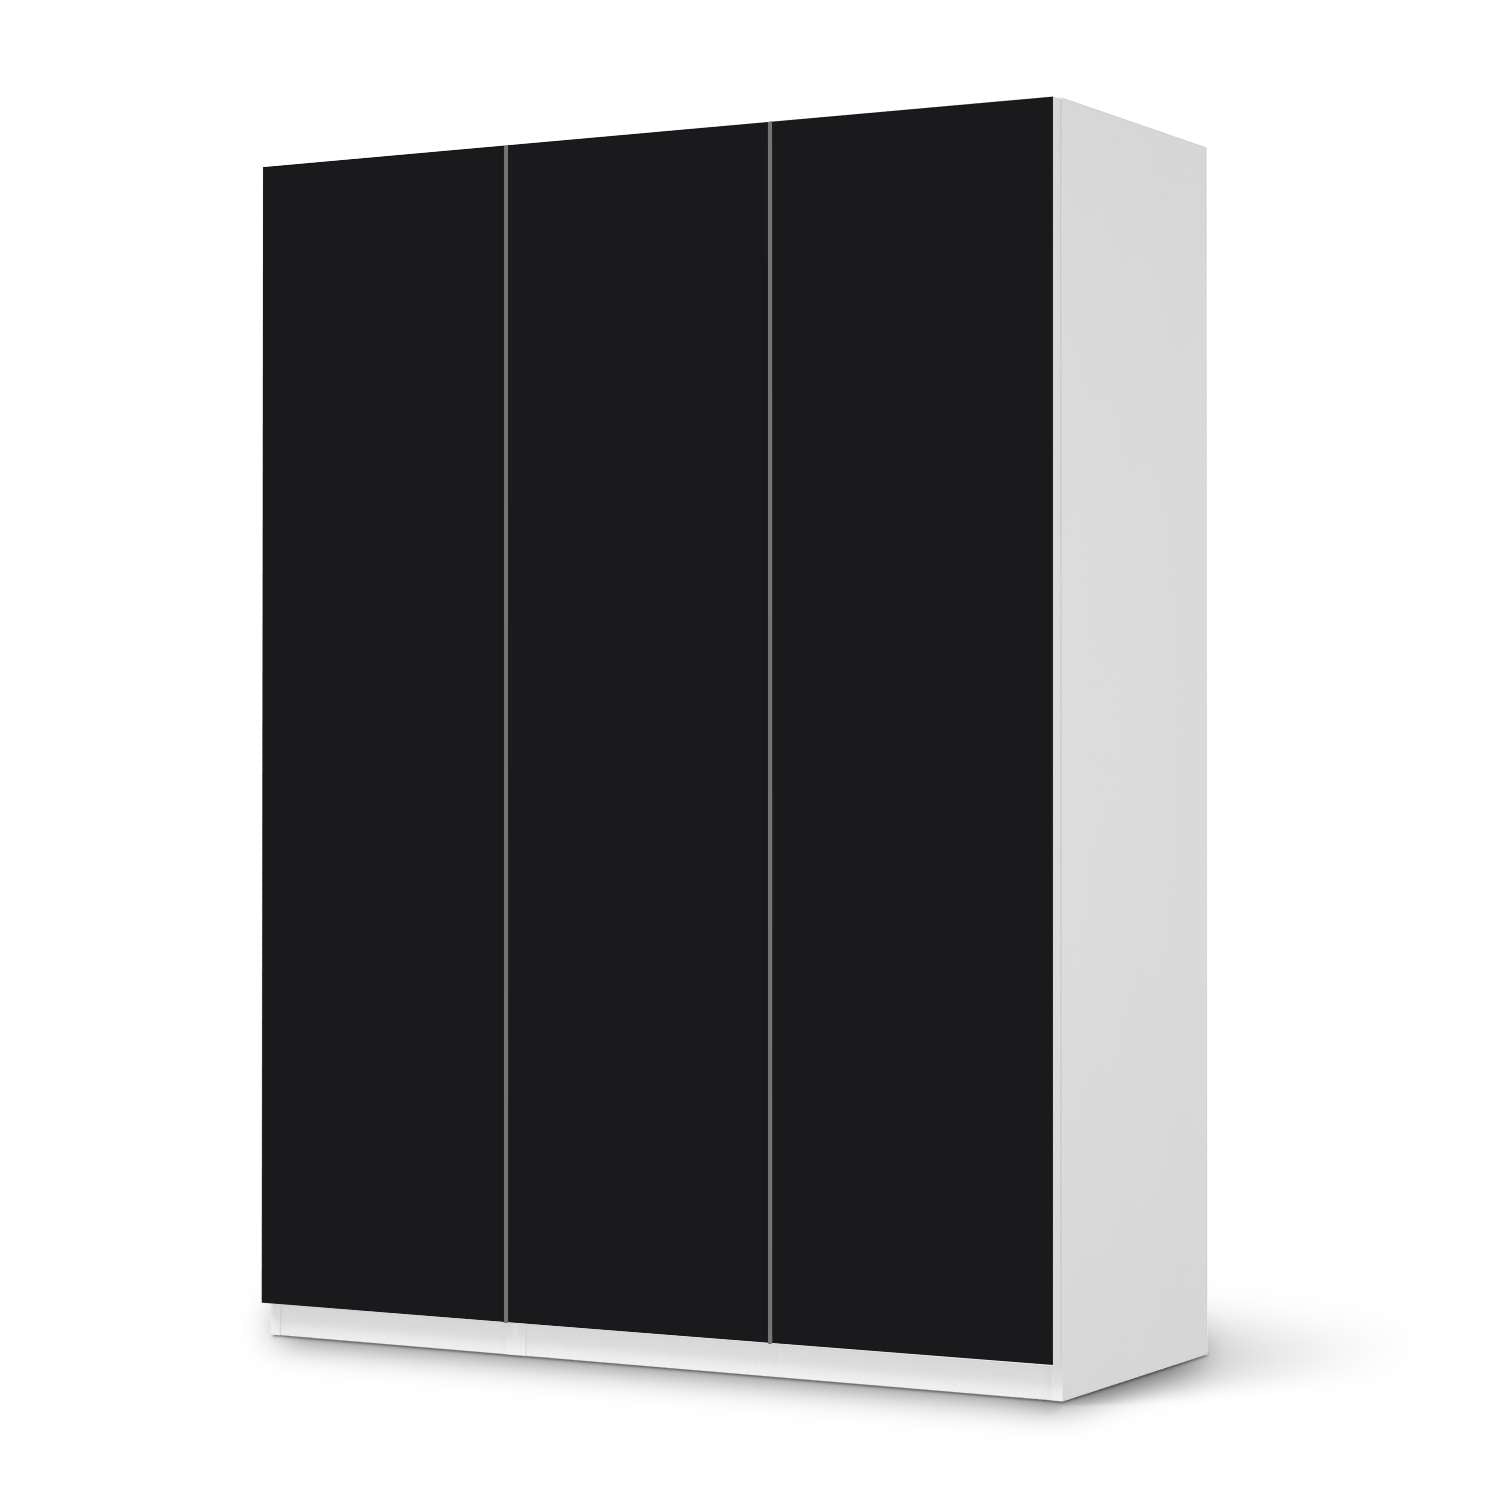 Folie für Möbel Pax Schrank 201 cm - 3 Türen (IKEA) Schwarz – creatisto